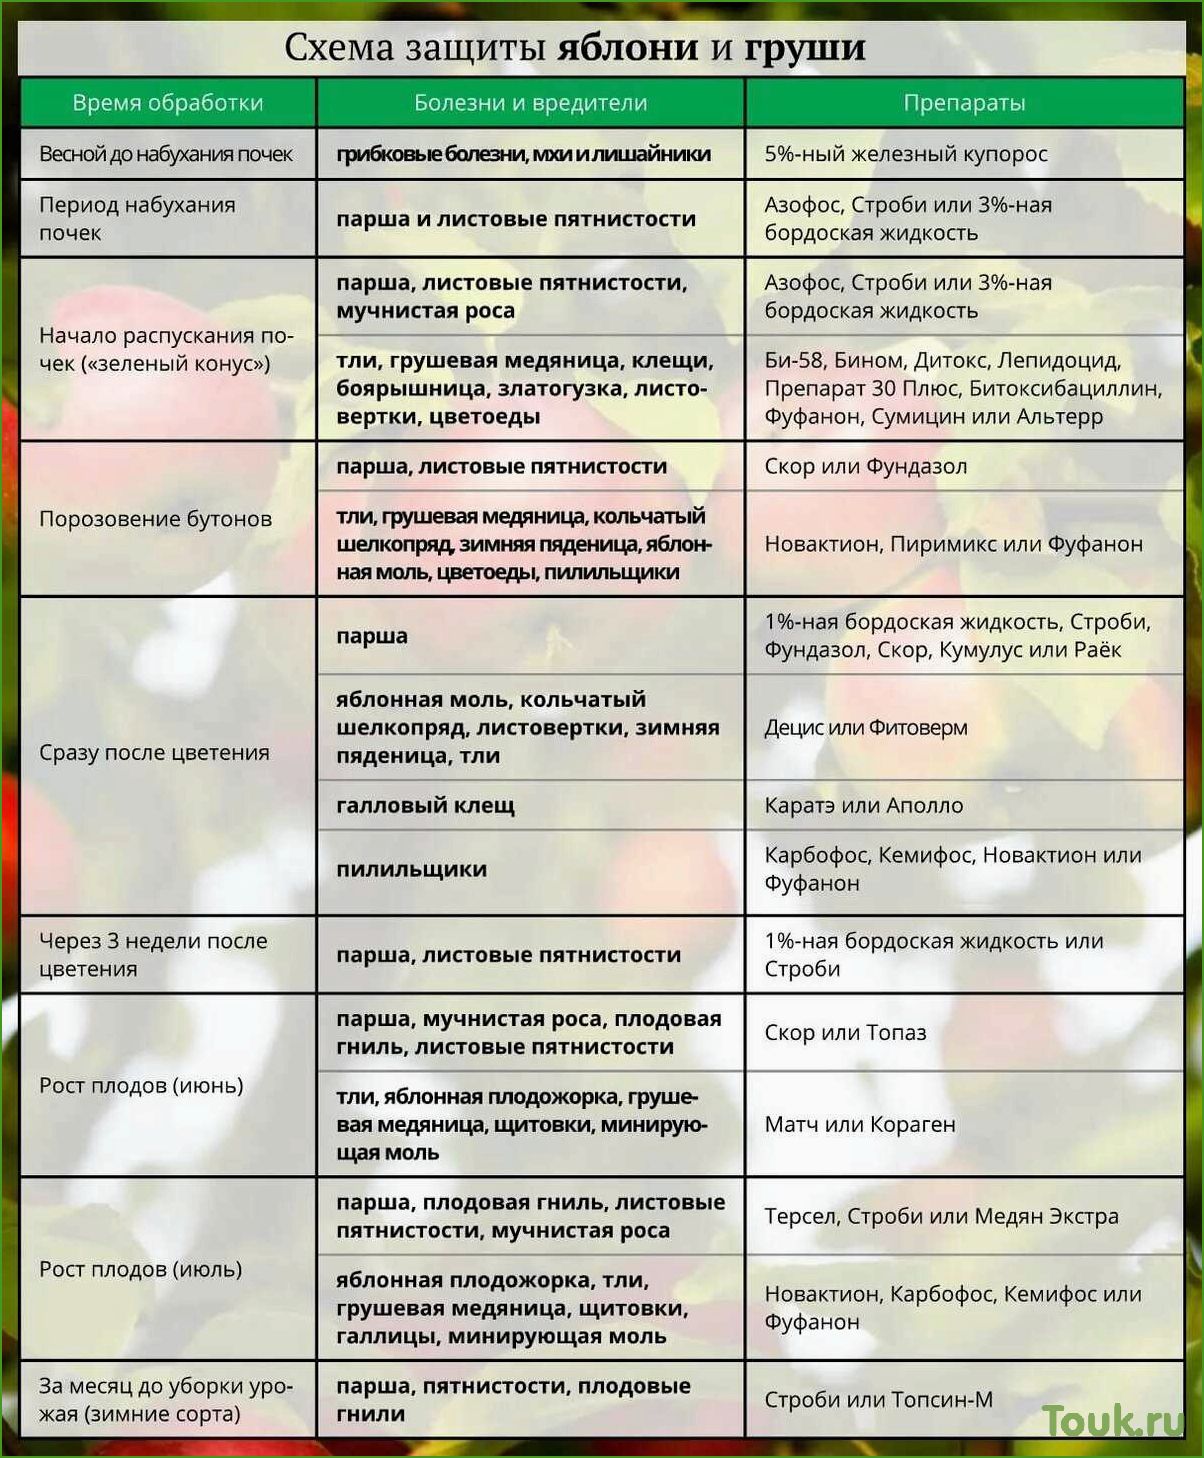 Как обработать яблони весной от вредителей и болезней: советы и рекомендации